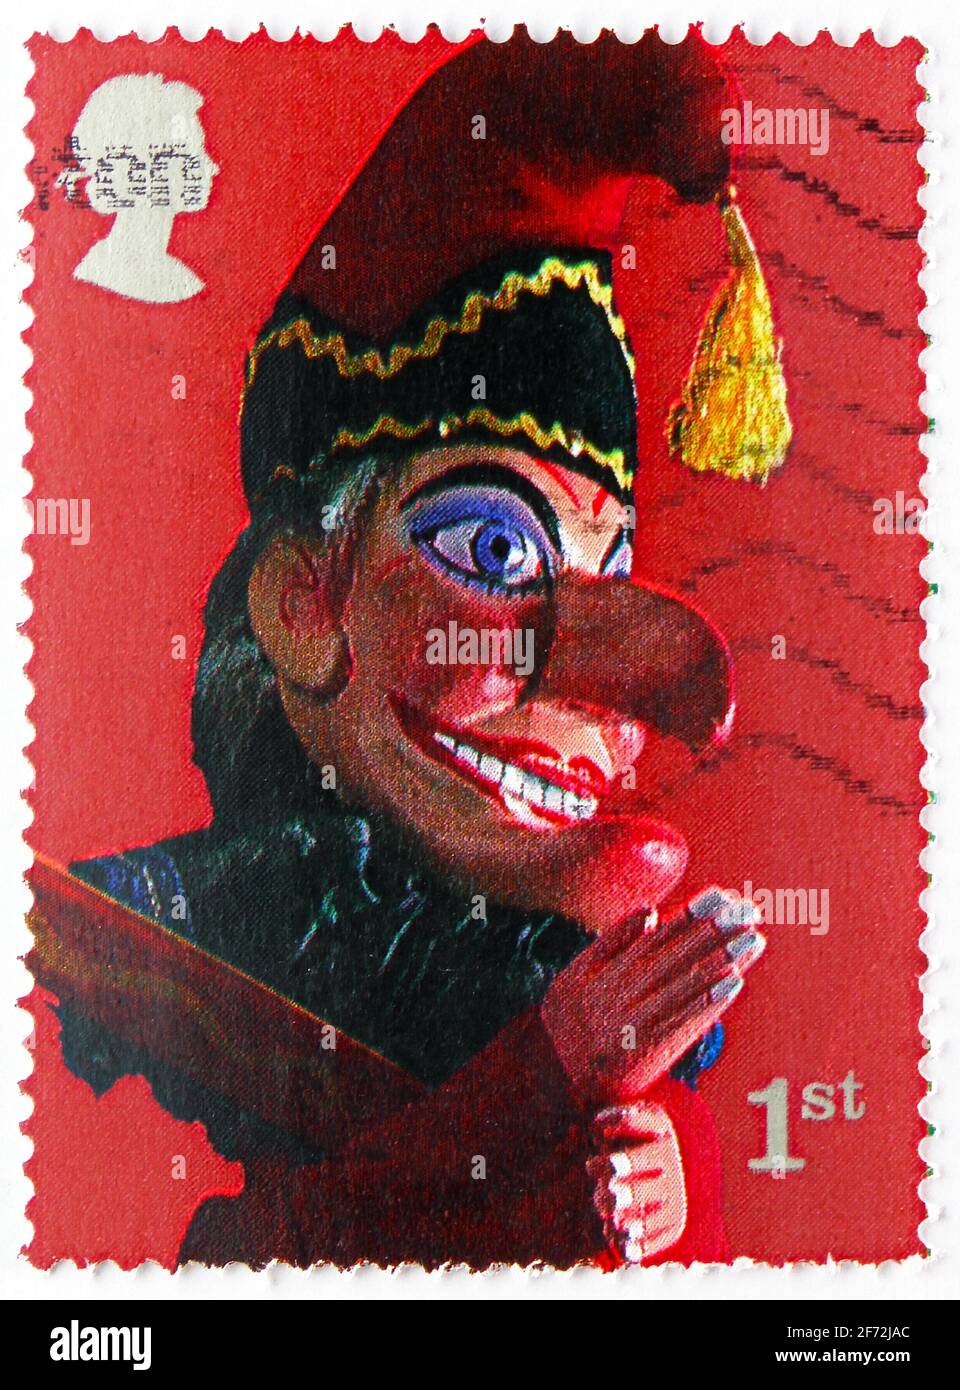 MOSCOU, RUSSIE - 22 DÉCEMBRE 2020 : le timbre-poste imprimé au Royaume-Uni montre la série de marionnettes de M. Punch, Punch et Judy Show, vers 2001 Banque D'Images